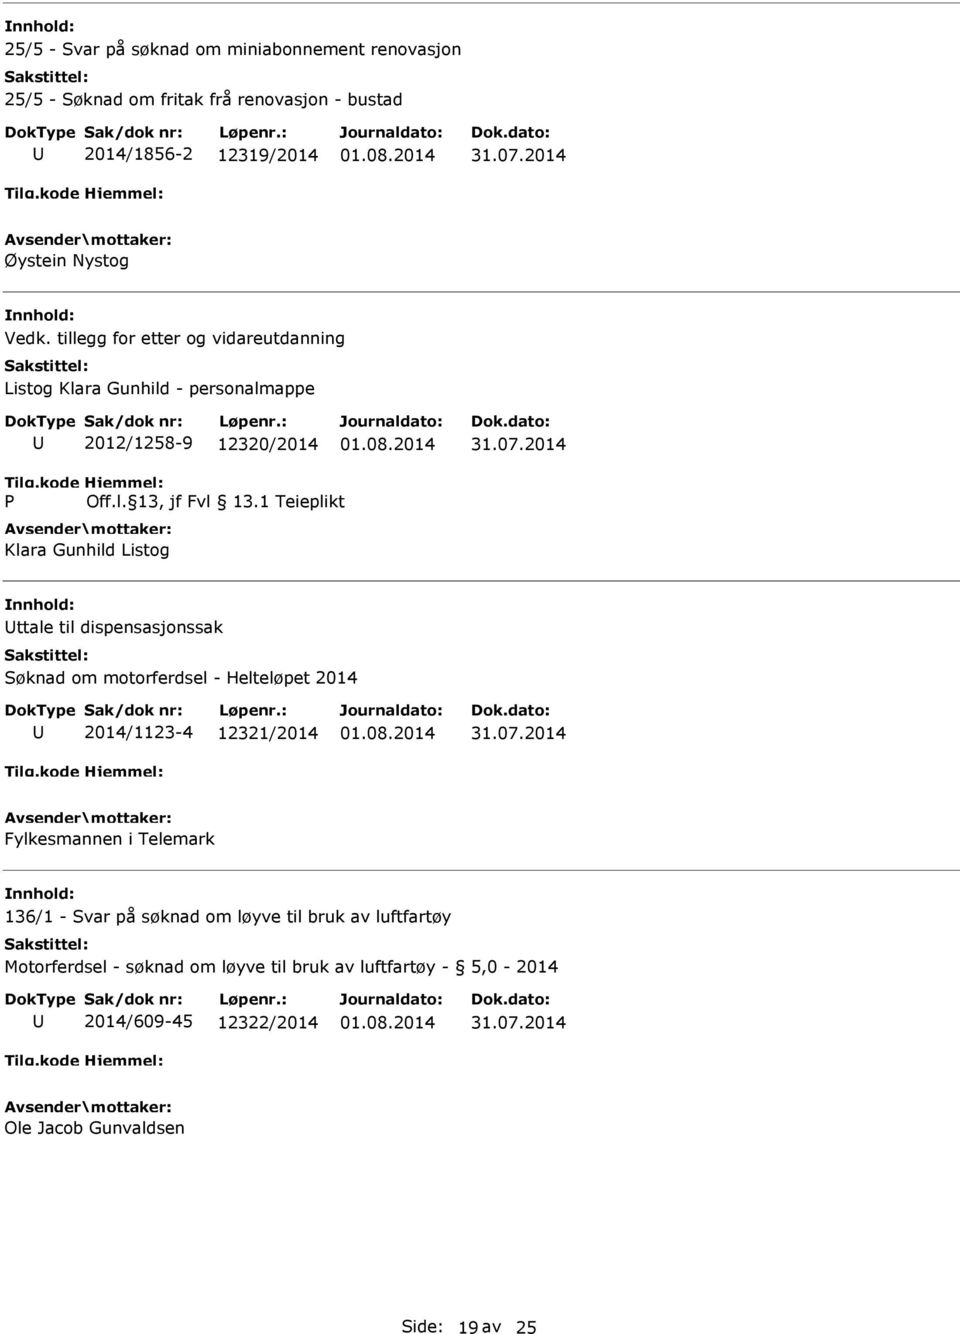 dispensasjonssak Søknad om motorferdsel - Helteløpet 2014 2014/1123-4 12321/2014 Fylkesmannen i Telemark 136/1 - Svar på søknad om løyve